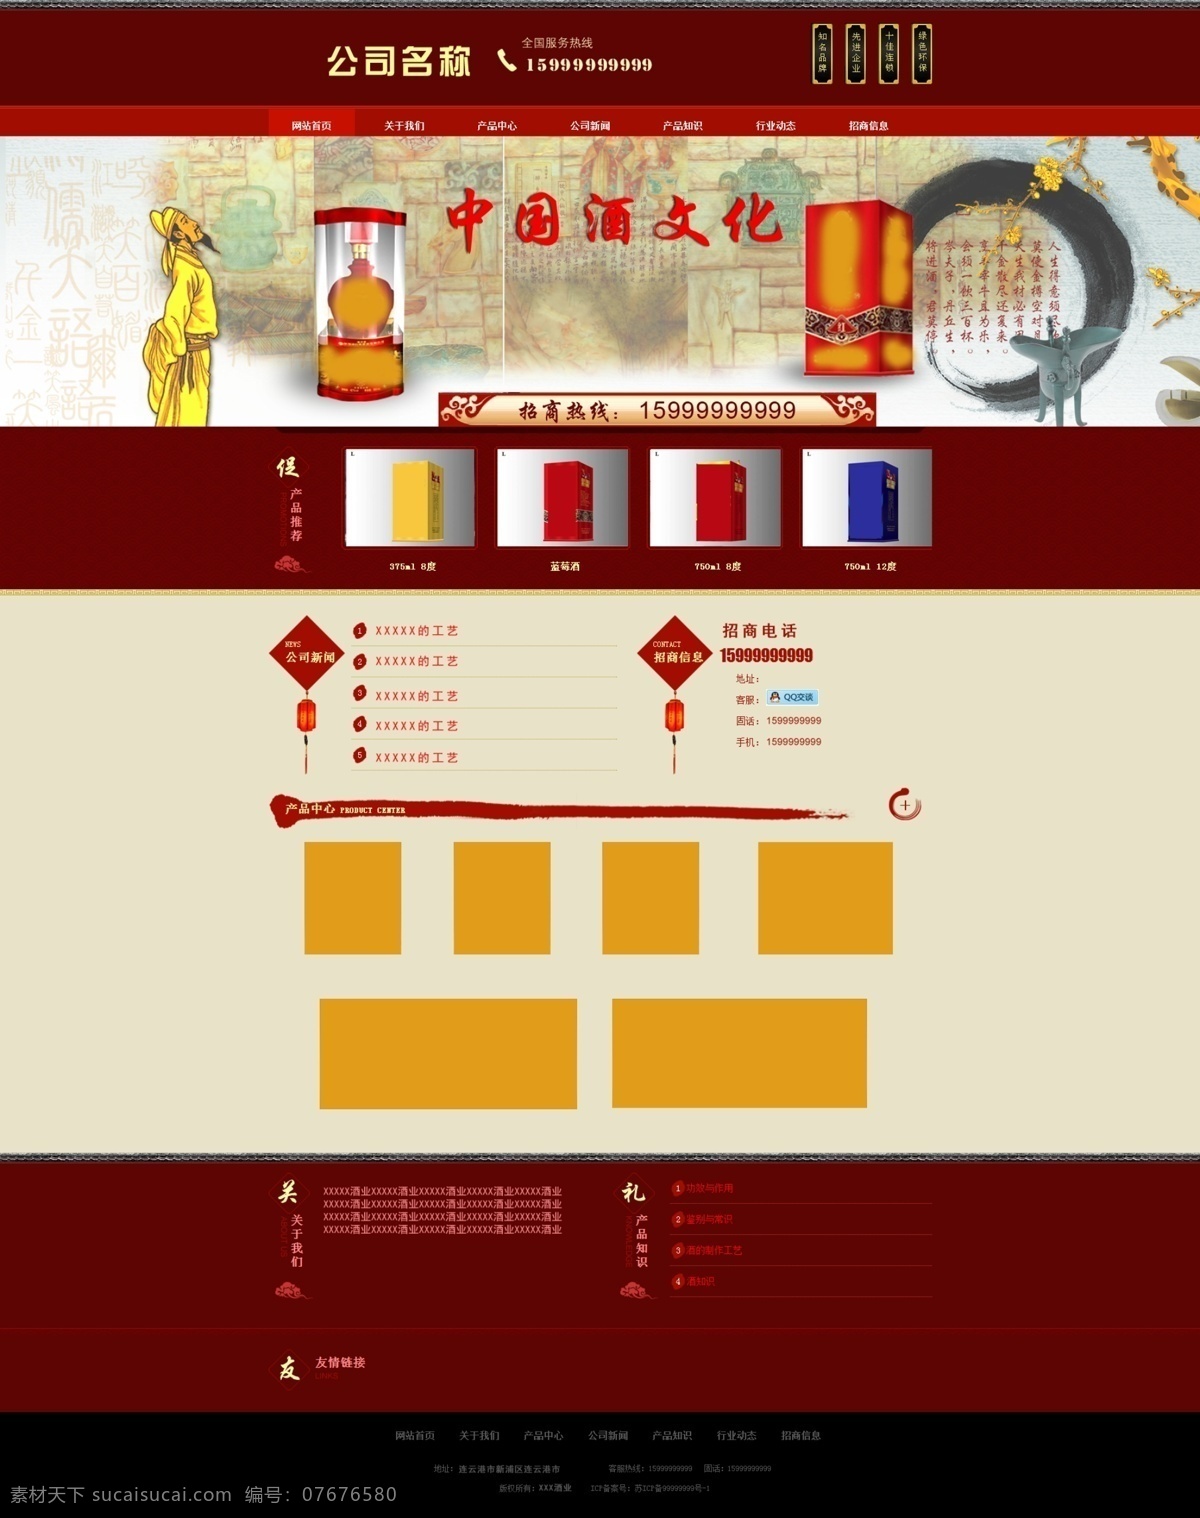 酒业 有限公司 网站设计 中国 风 酒业公司 网站首页 中国风 banner 大图 主页